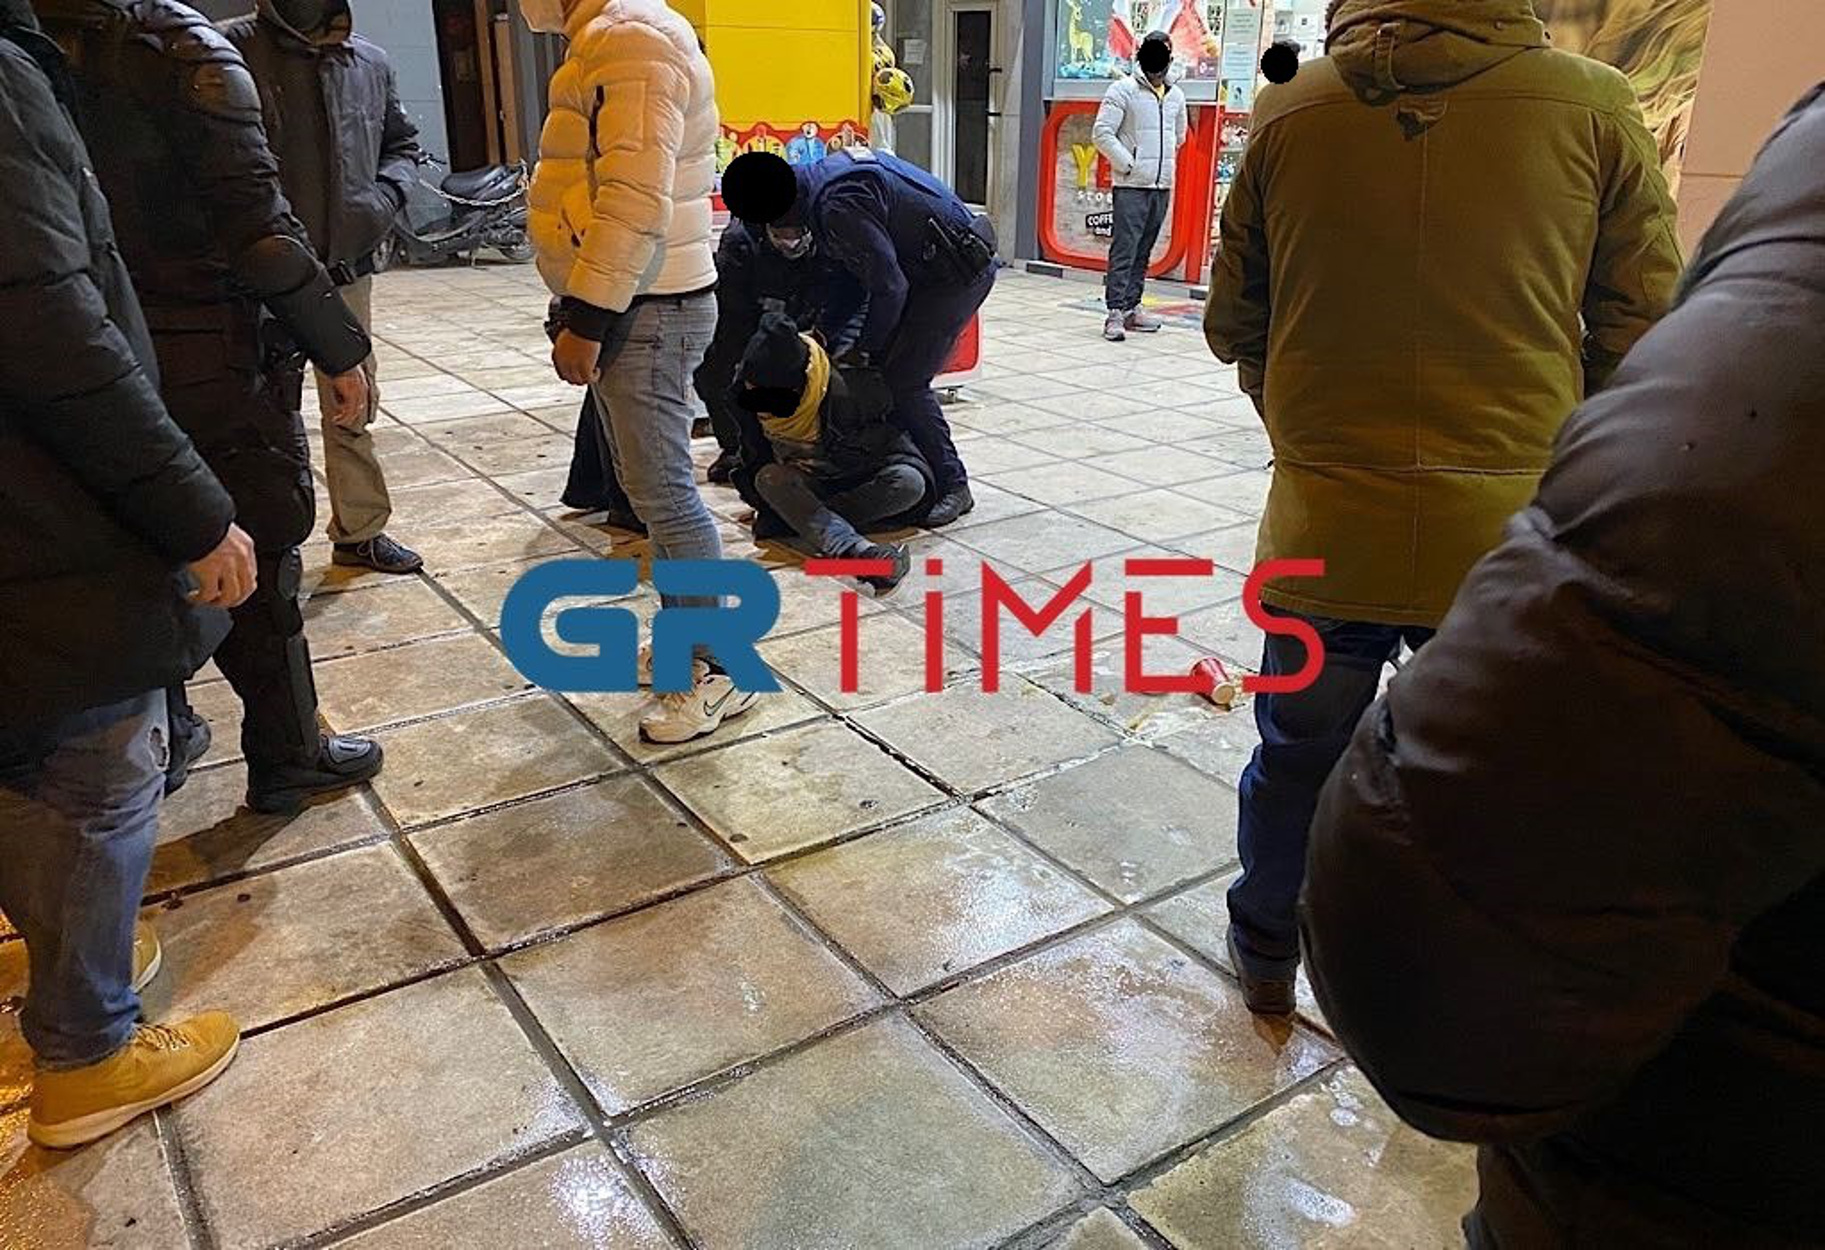 Θεσσαλονίκη: Πήγε με σπασμένο μπουκάλι με κατάστημα και απειλούσε υπάλληλο και θαμώνες